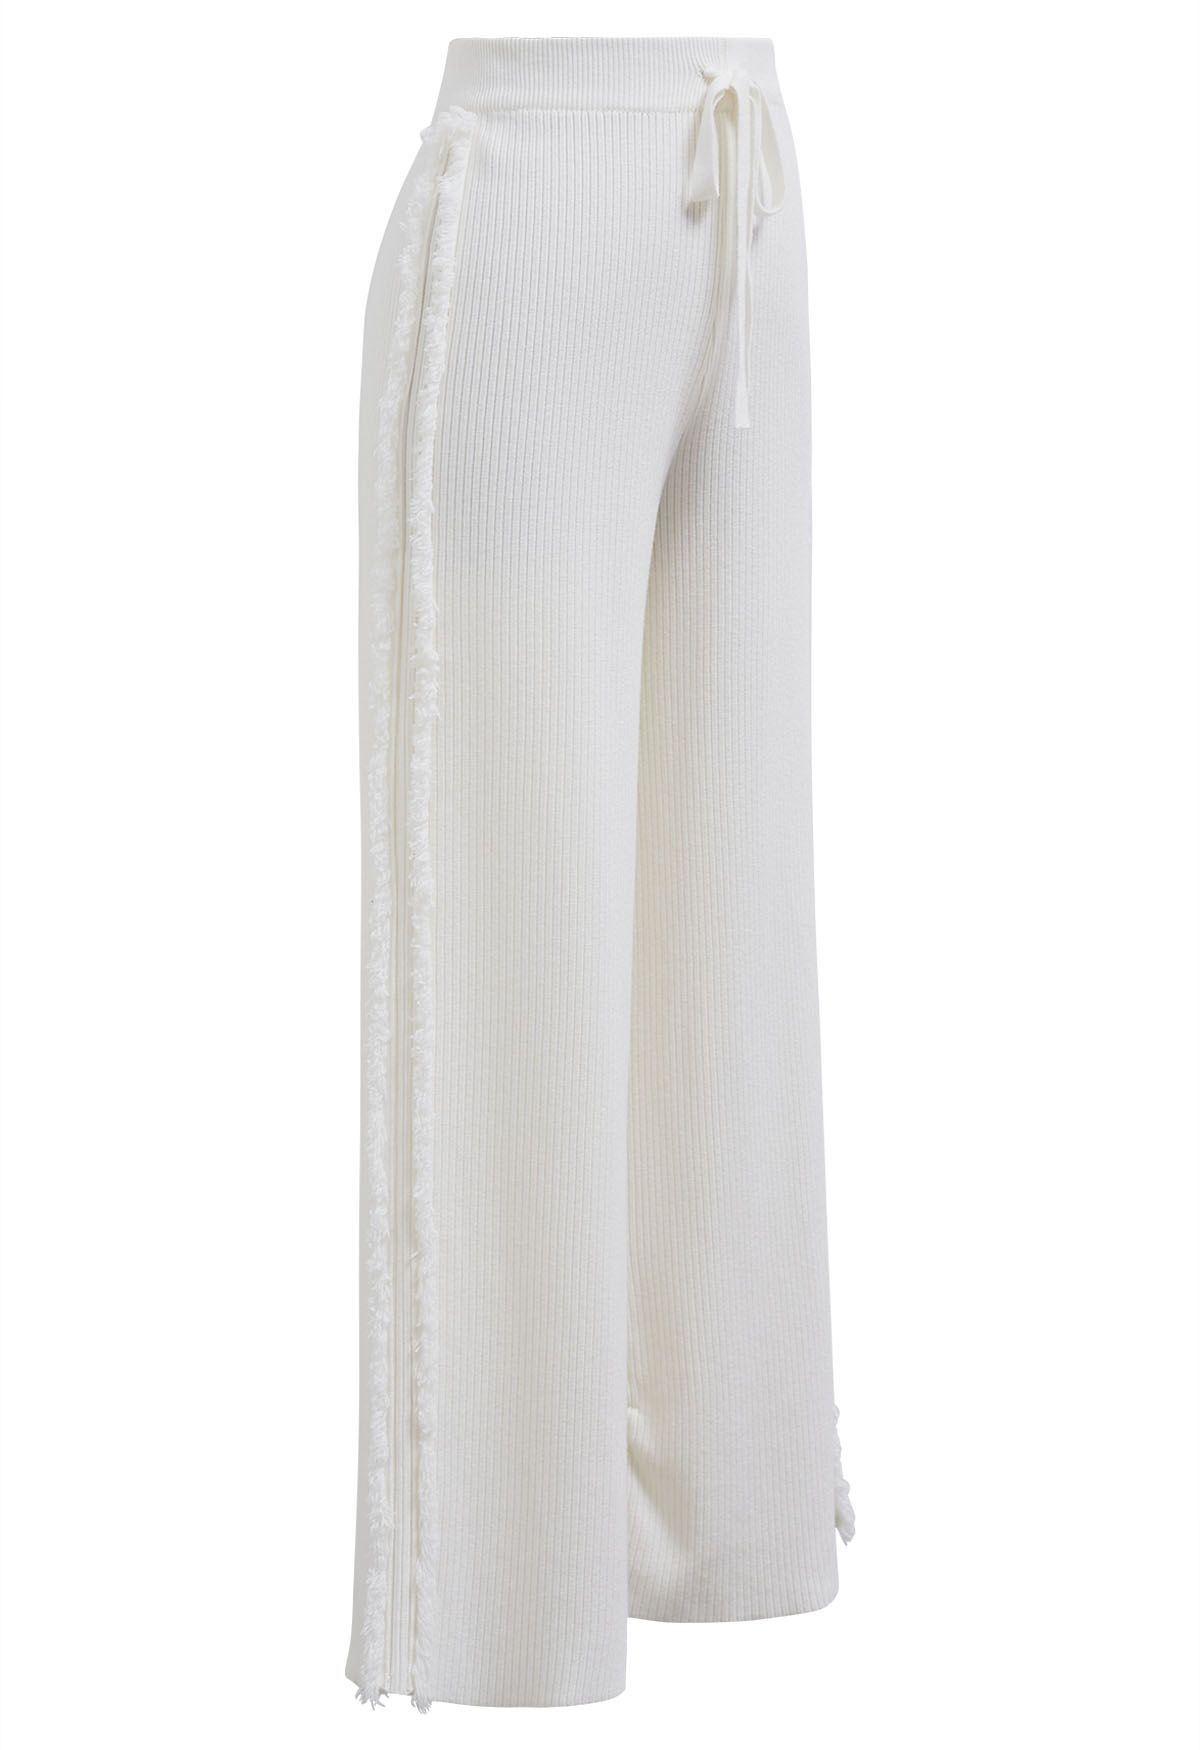 Pantalon en tricot à jambe droite avec bordure à pampilles latérales, blanc